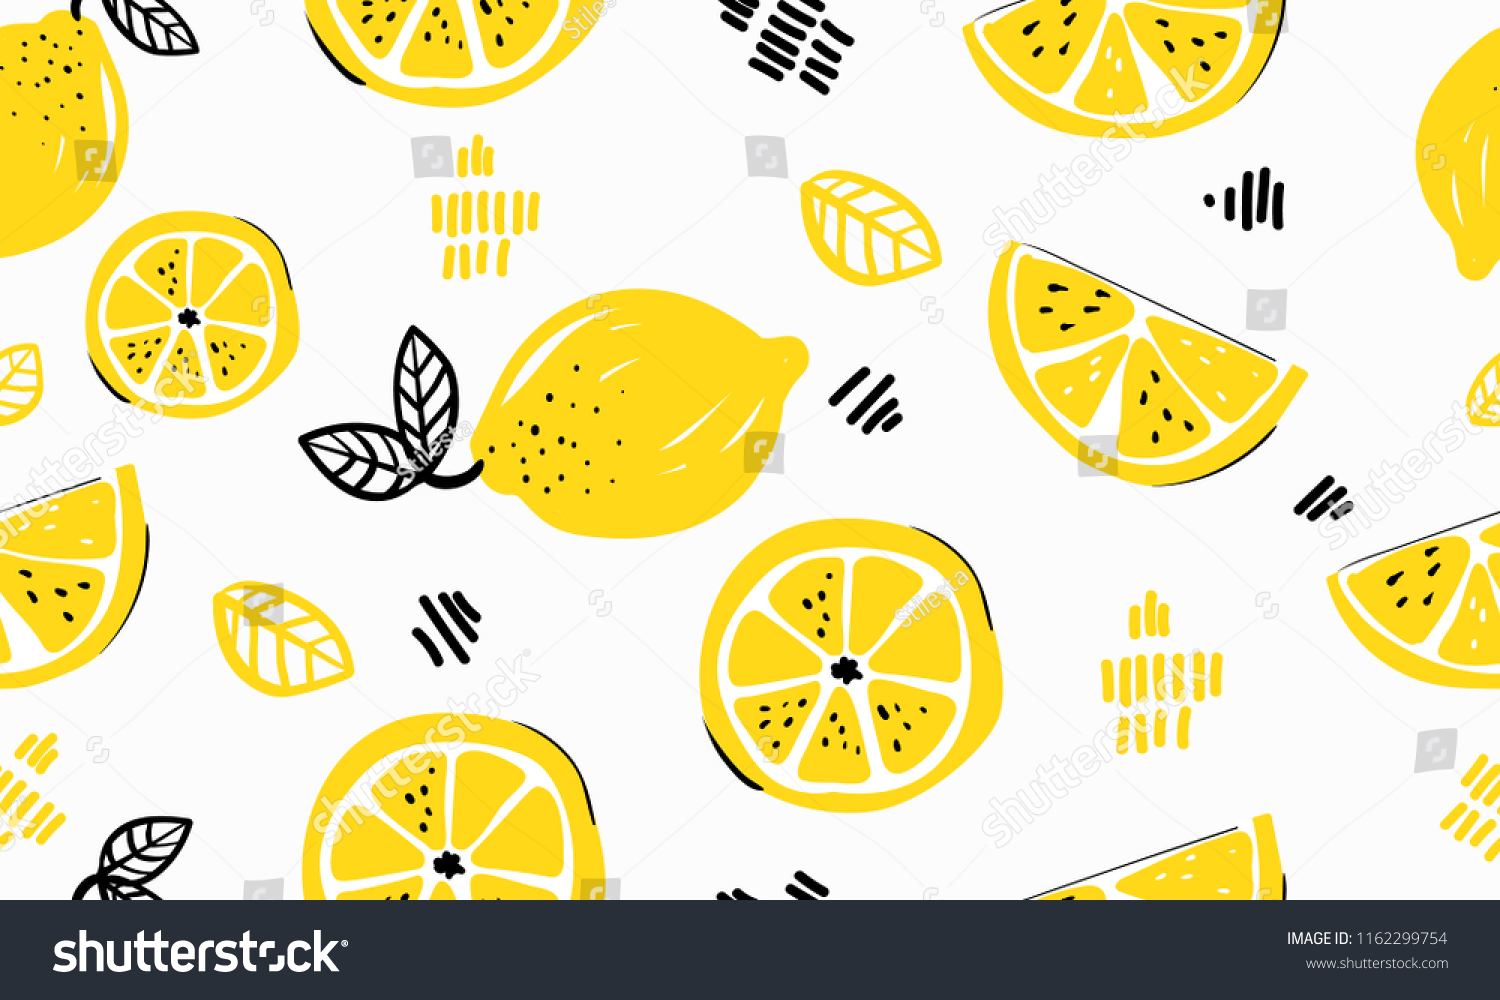 Рисунок с лимоном для футболки